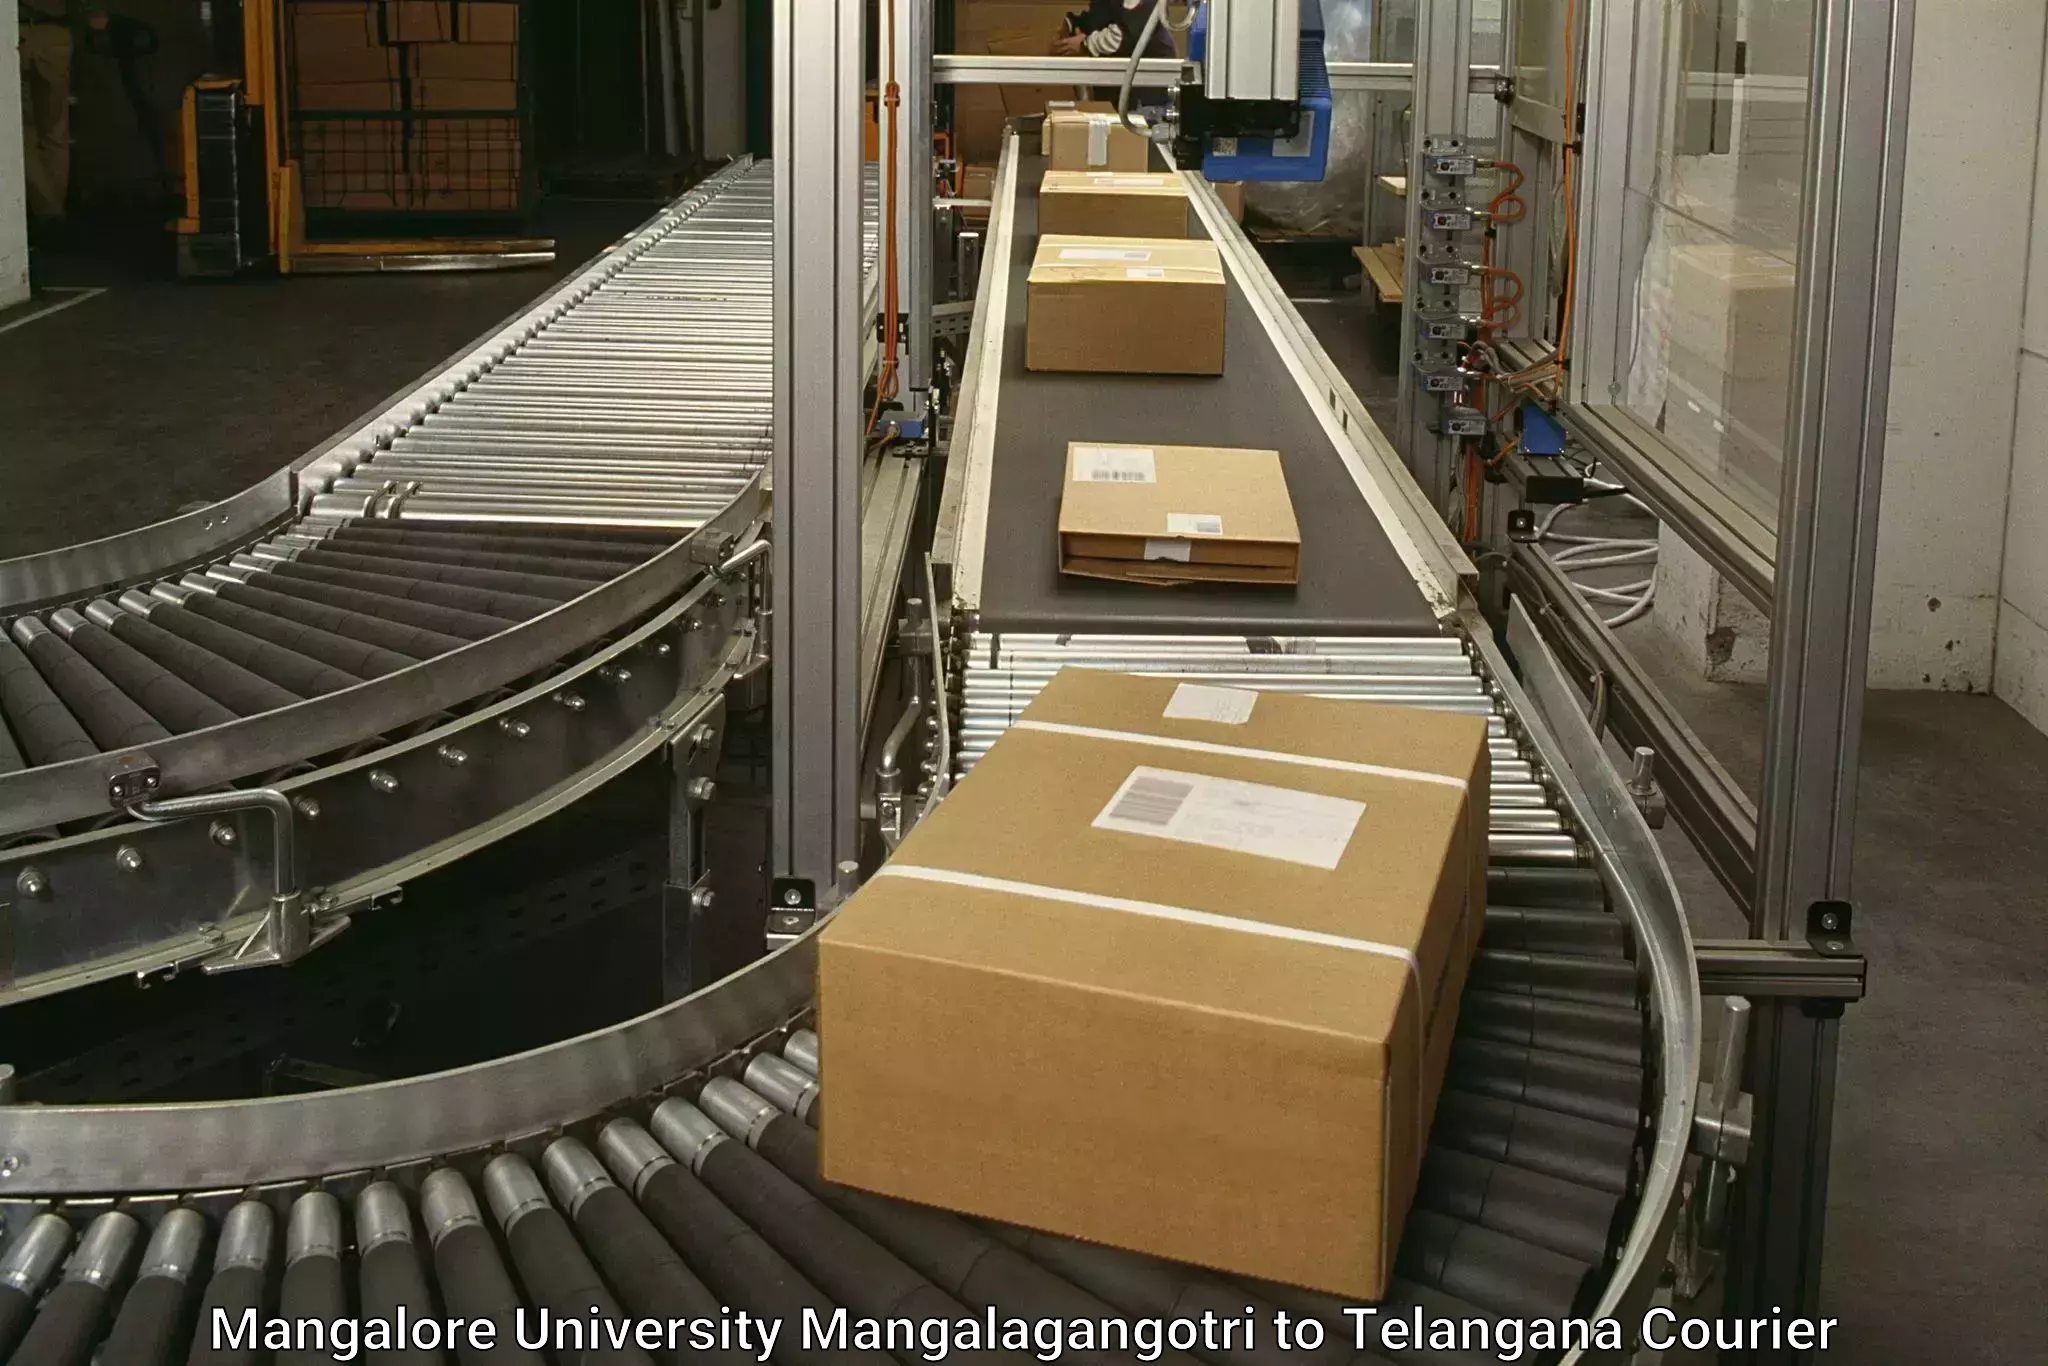 Urgent courier needs Mangalore University Mangalagangotri to Allapalli